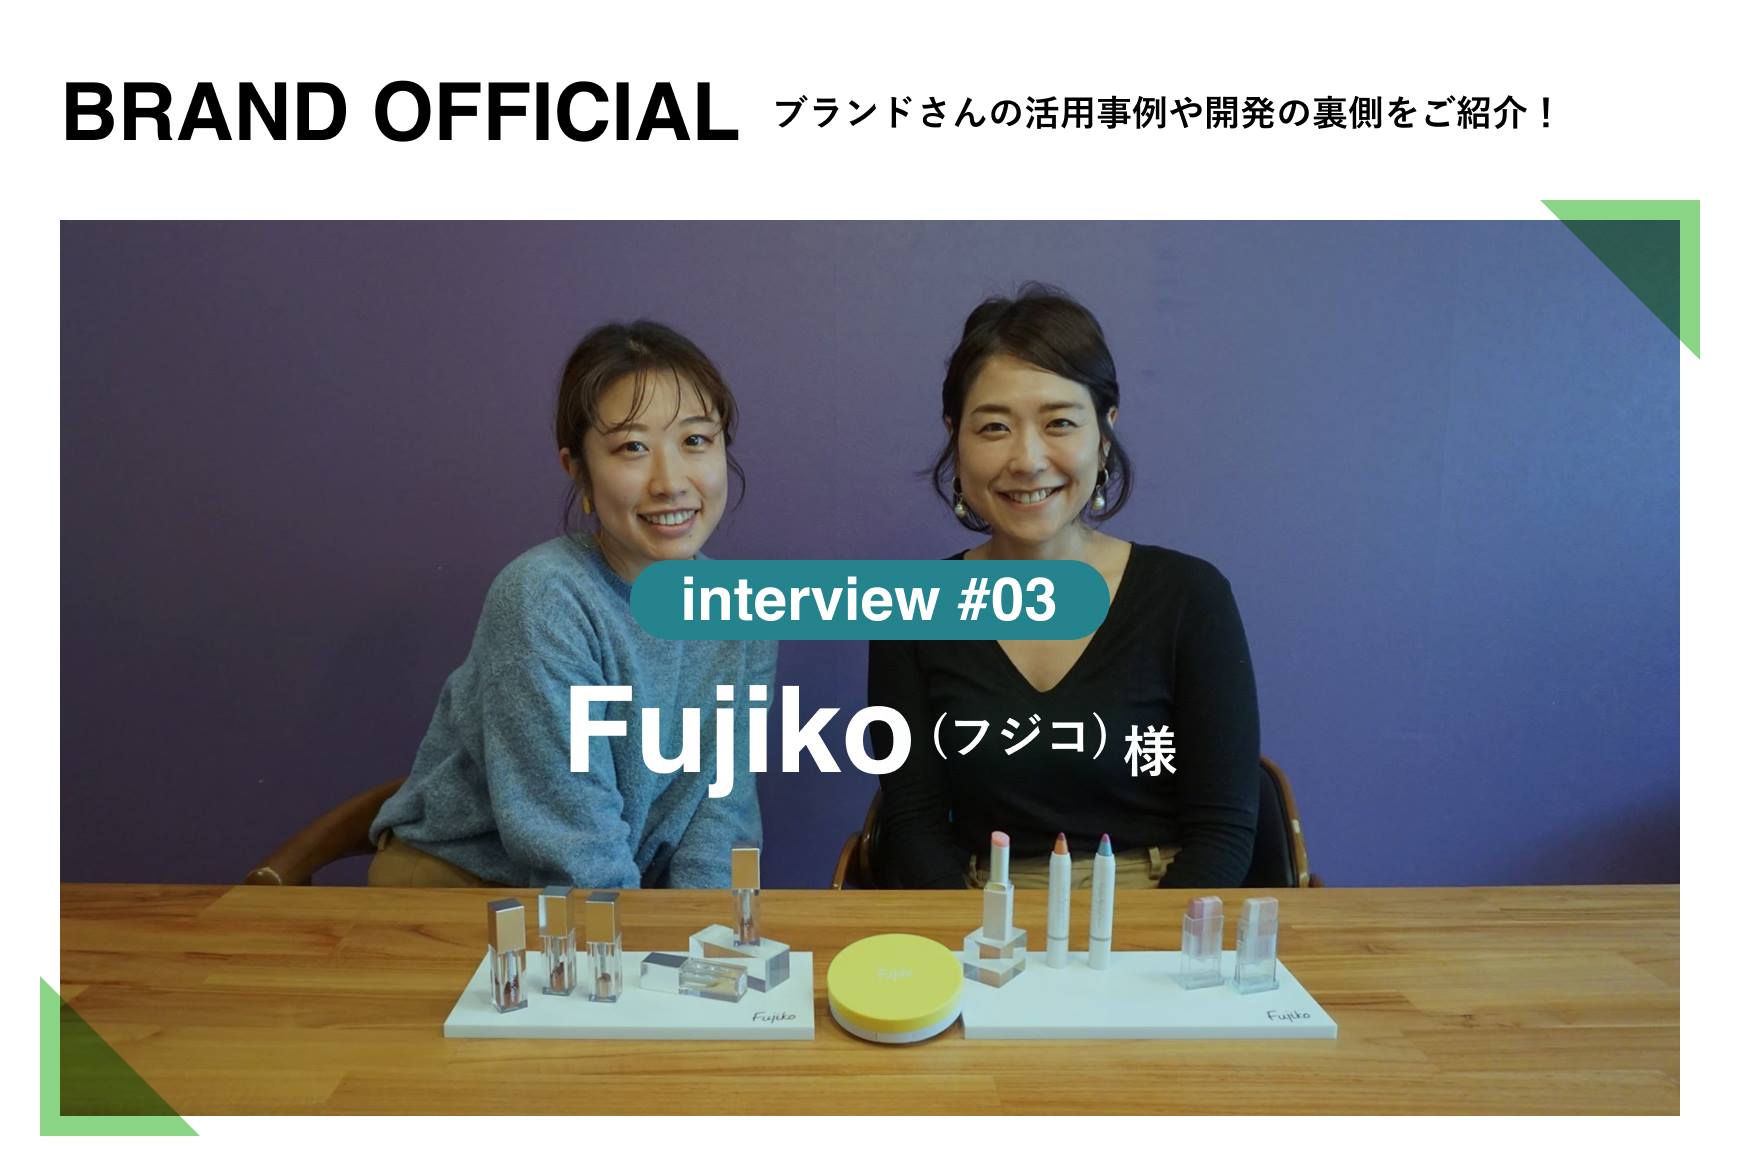 600円 世界的に有名な fujiko様